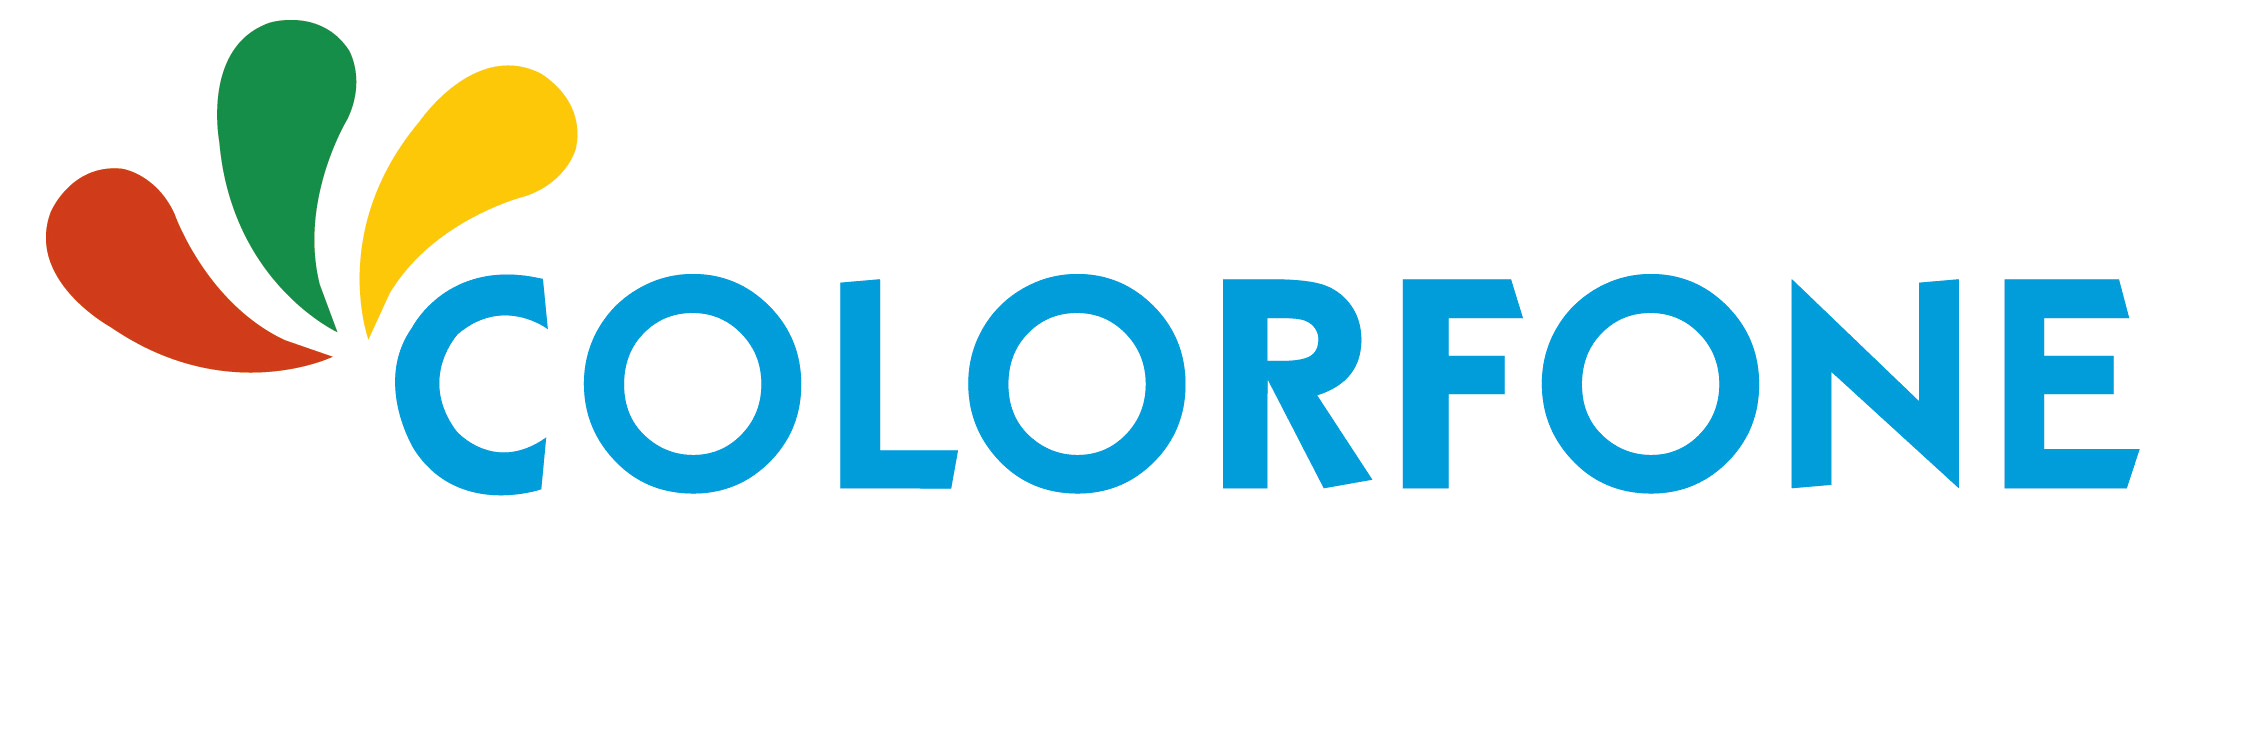 Colorfone - Piattaforma B2B internazionale